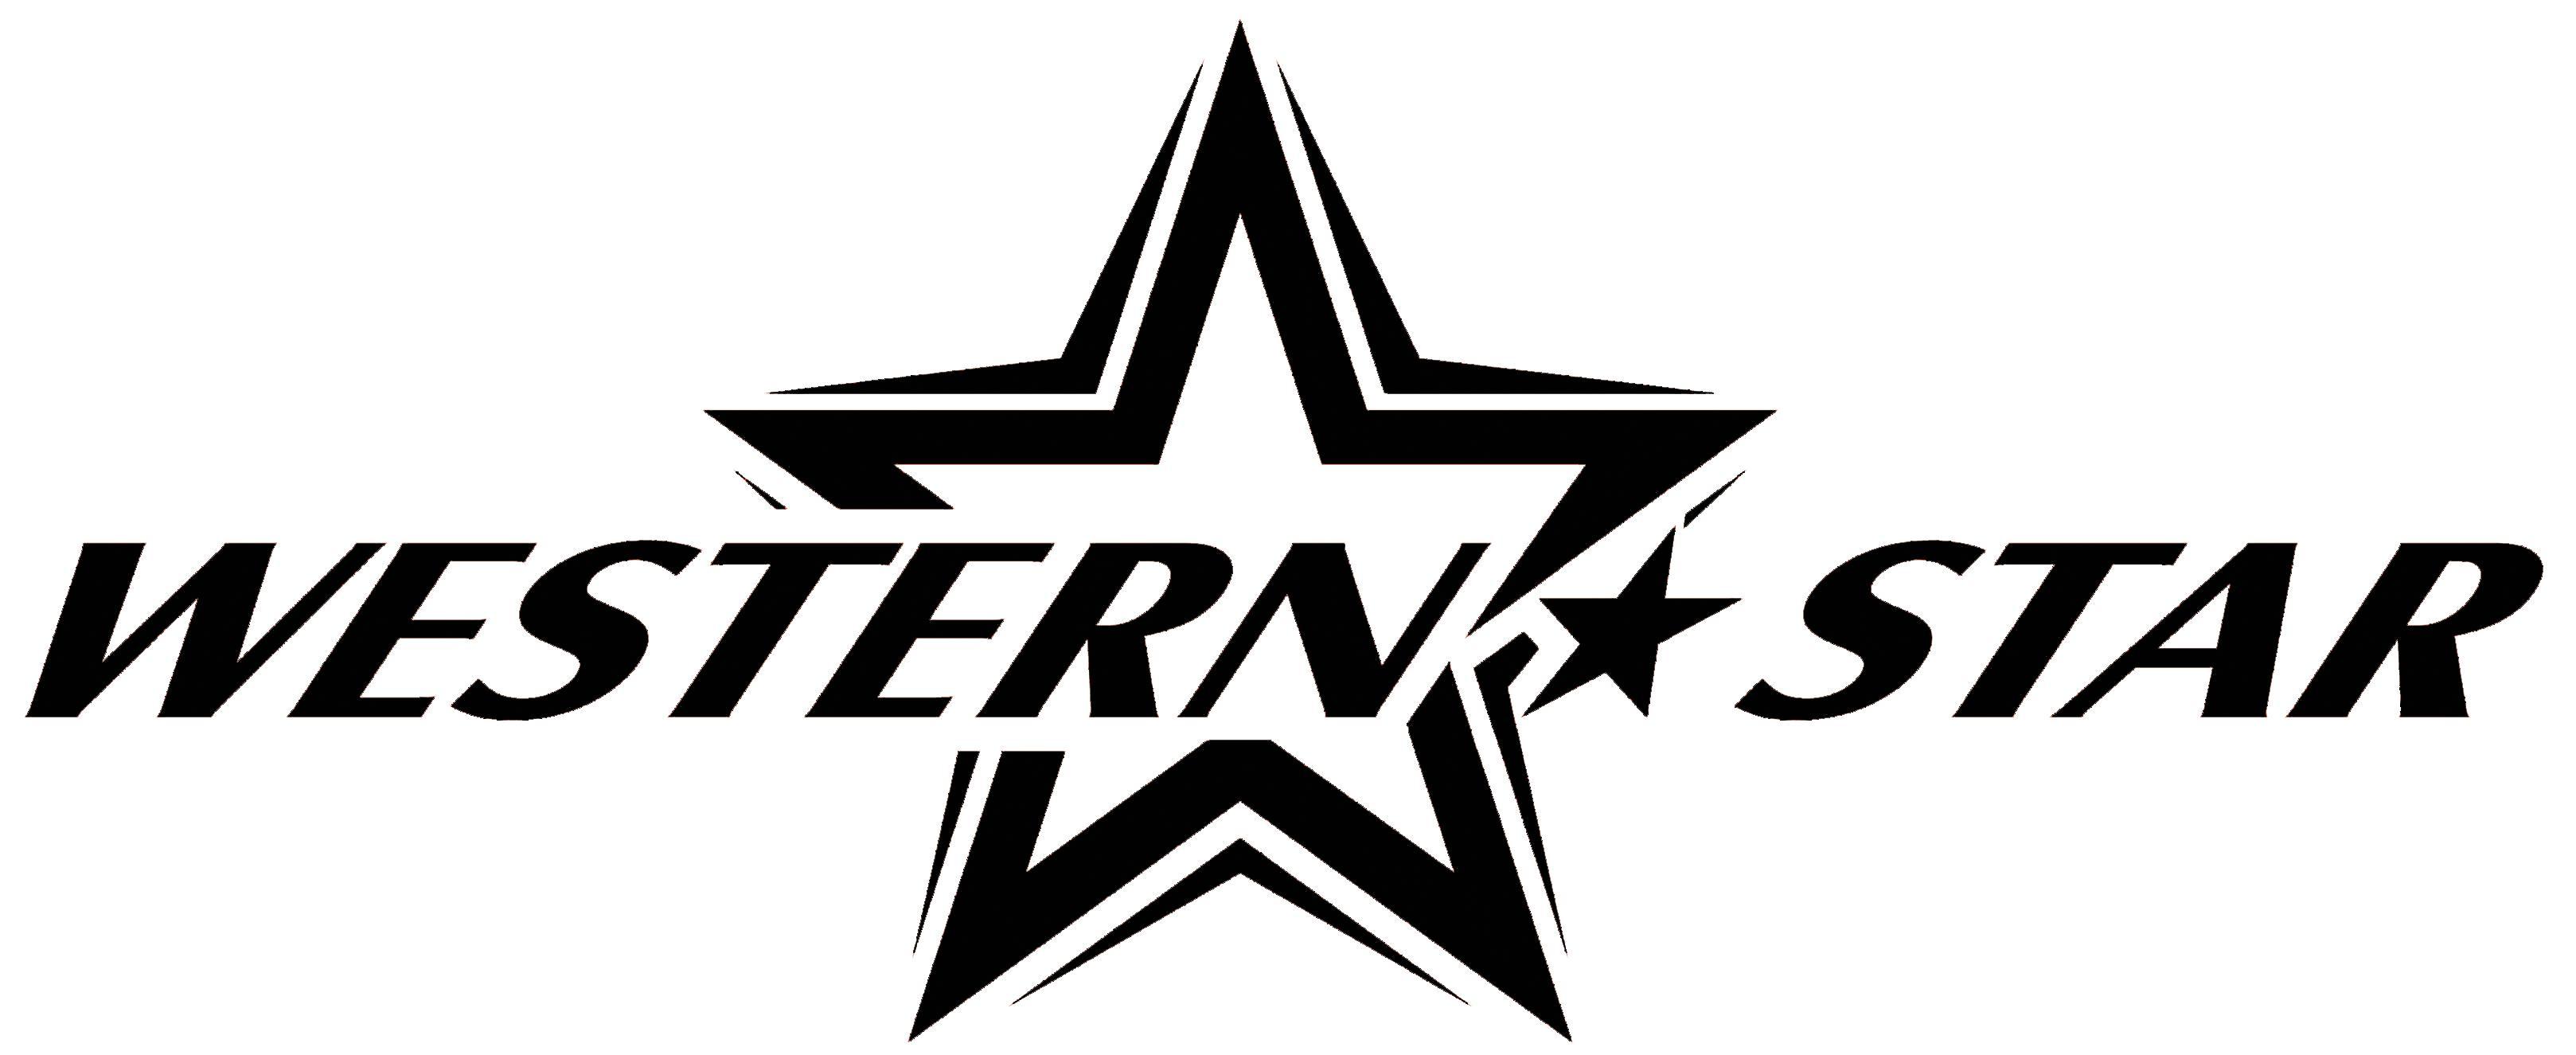 Black and White Western Star Logo - Western Star Souvenir LLC